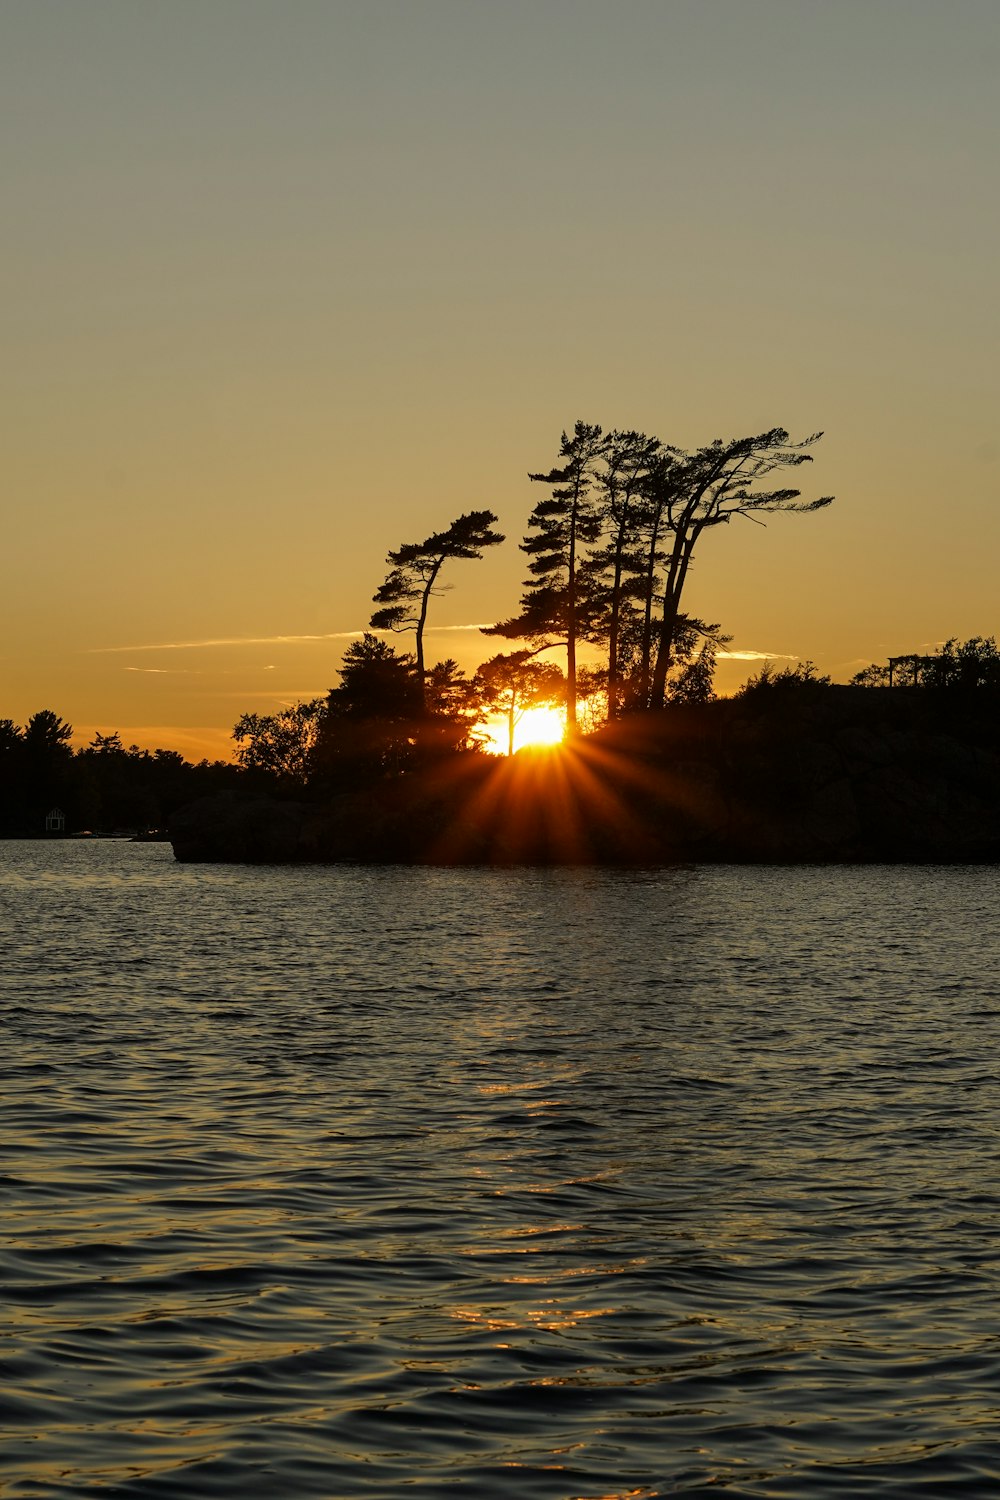 Il sole sta tramontando su una piccola isola nell'acqua